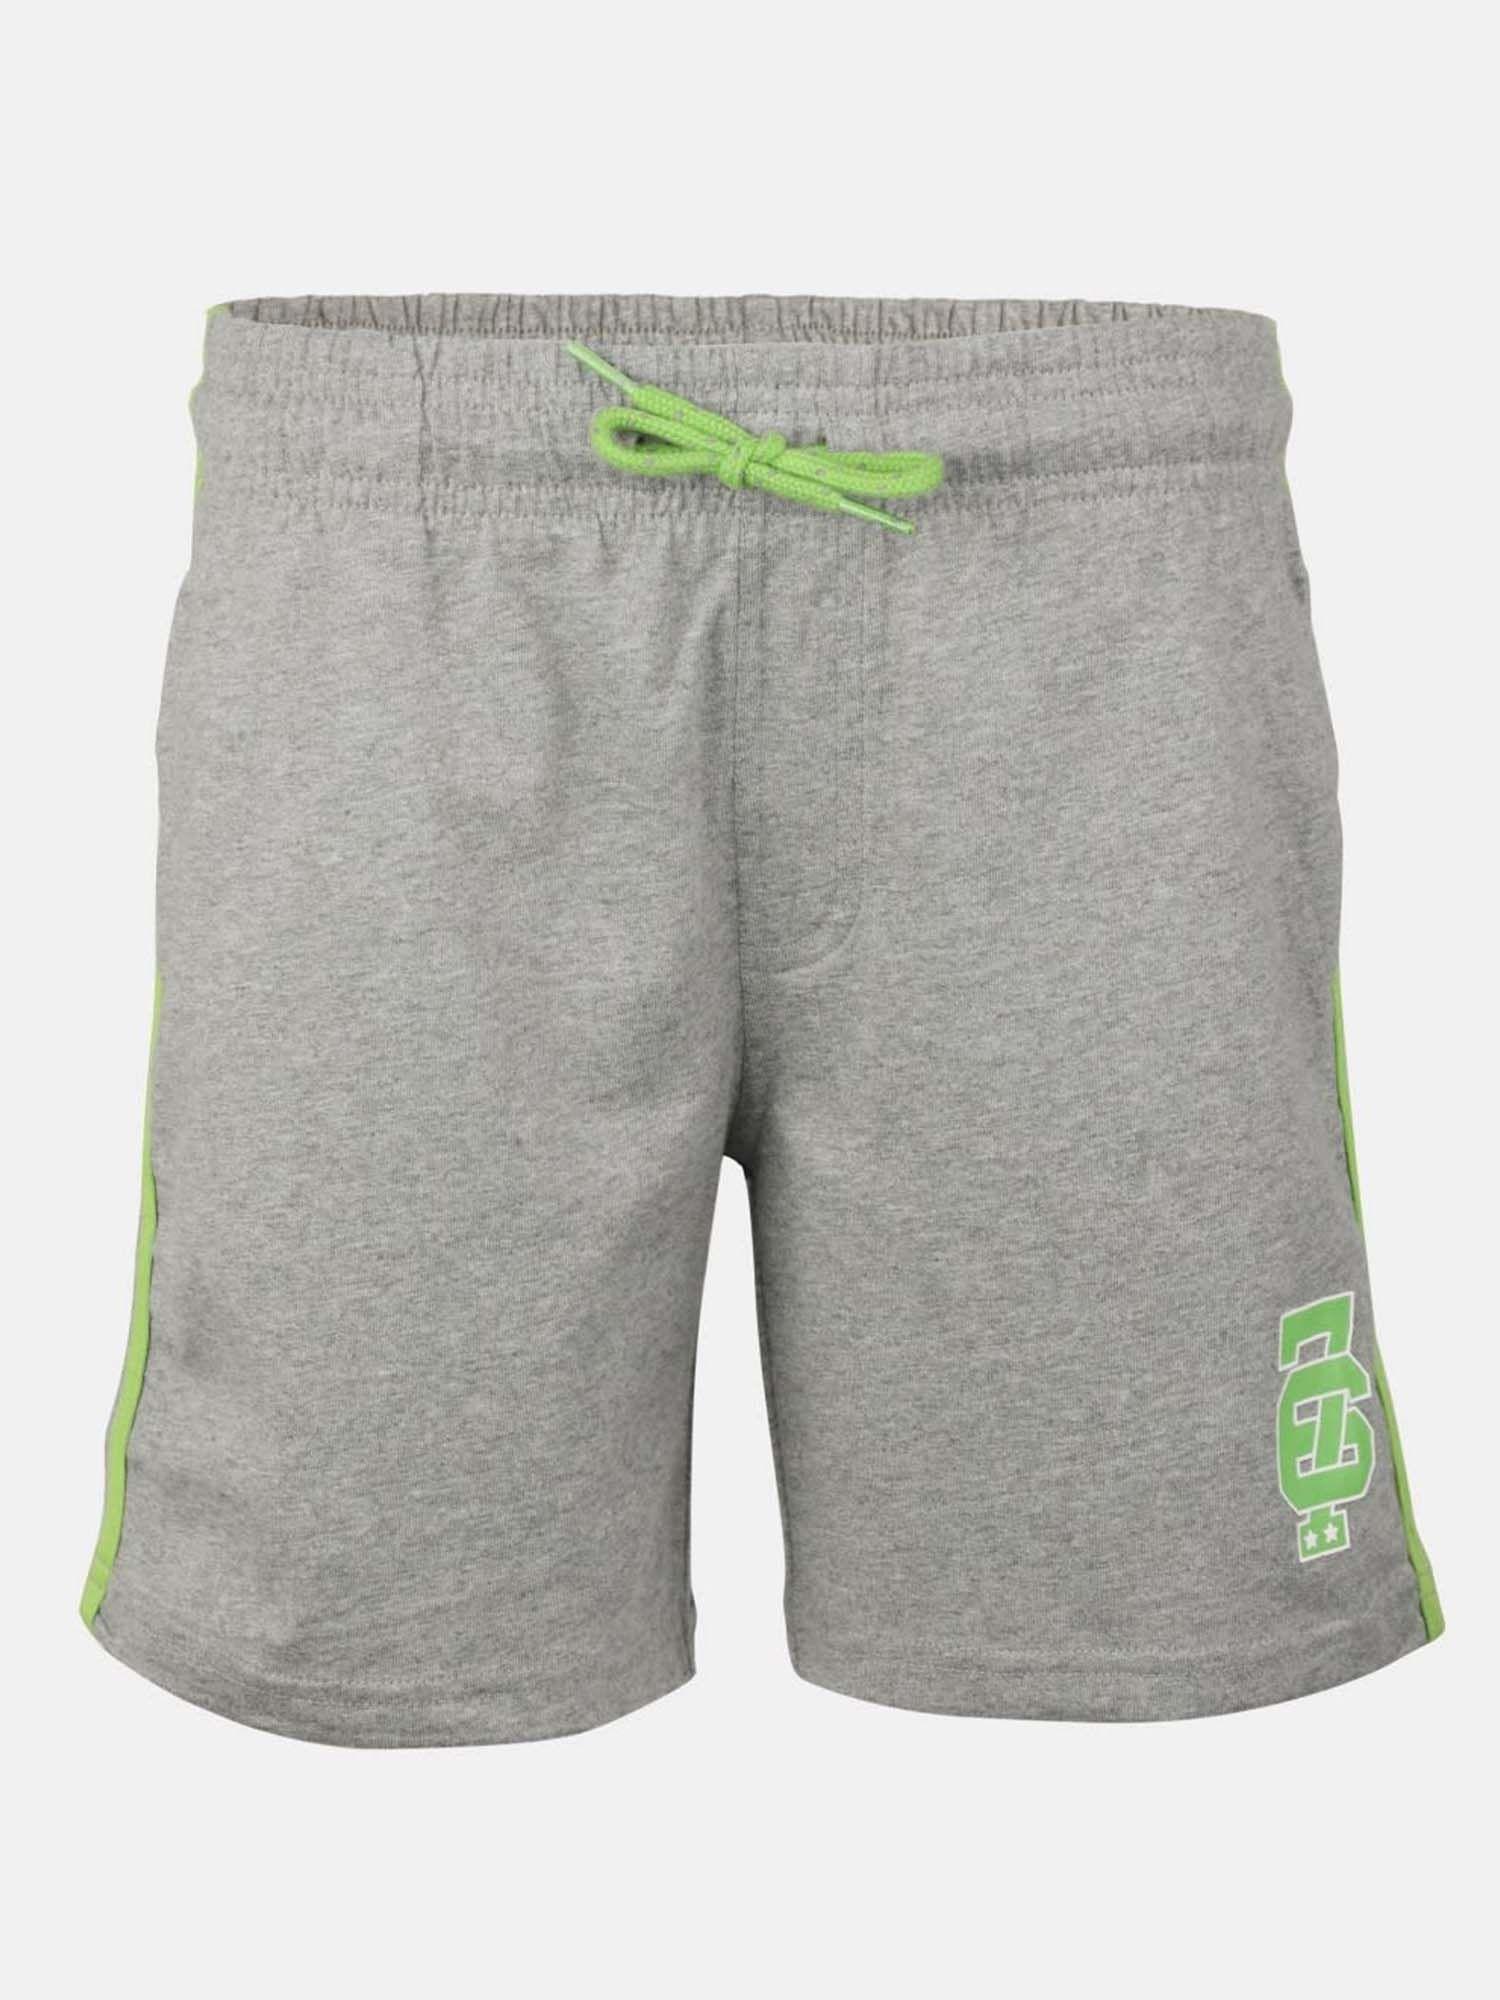 grey melange boys shorts - style number - (ab11)